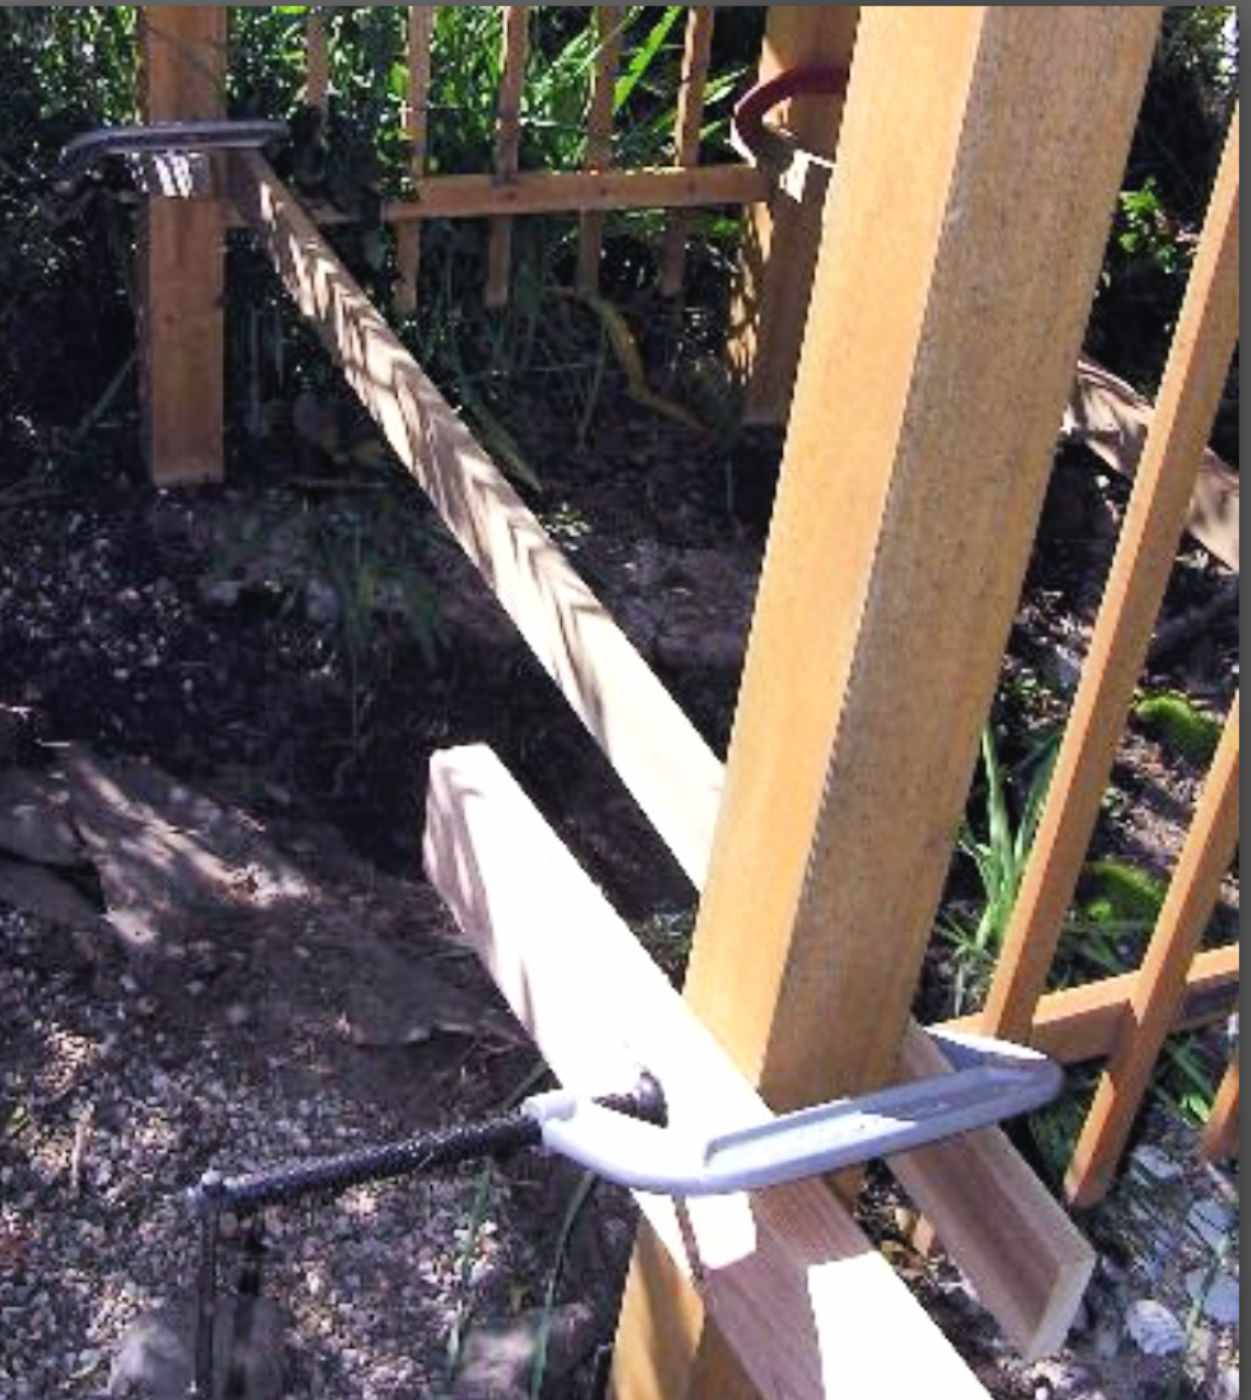 cavando buracos para postes